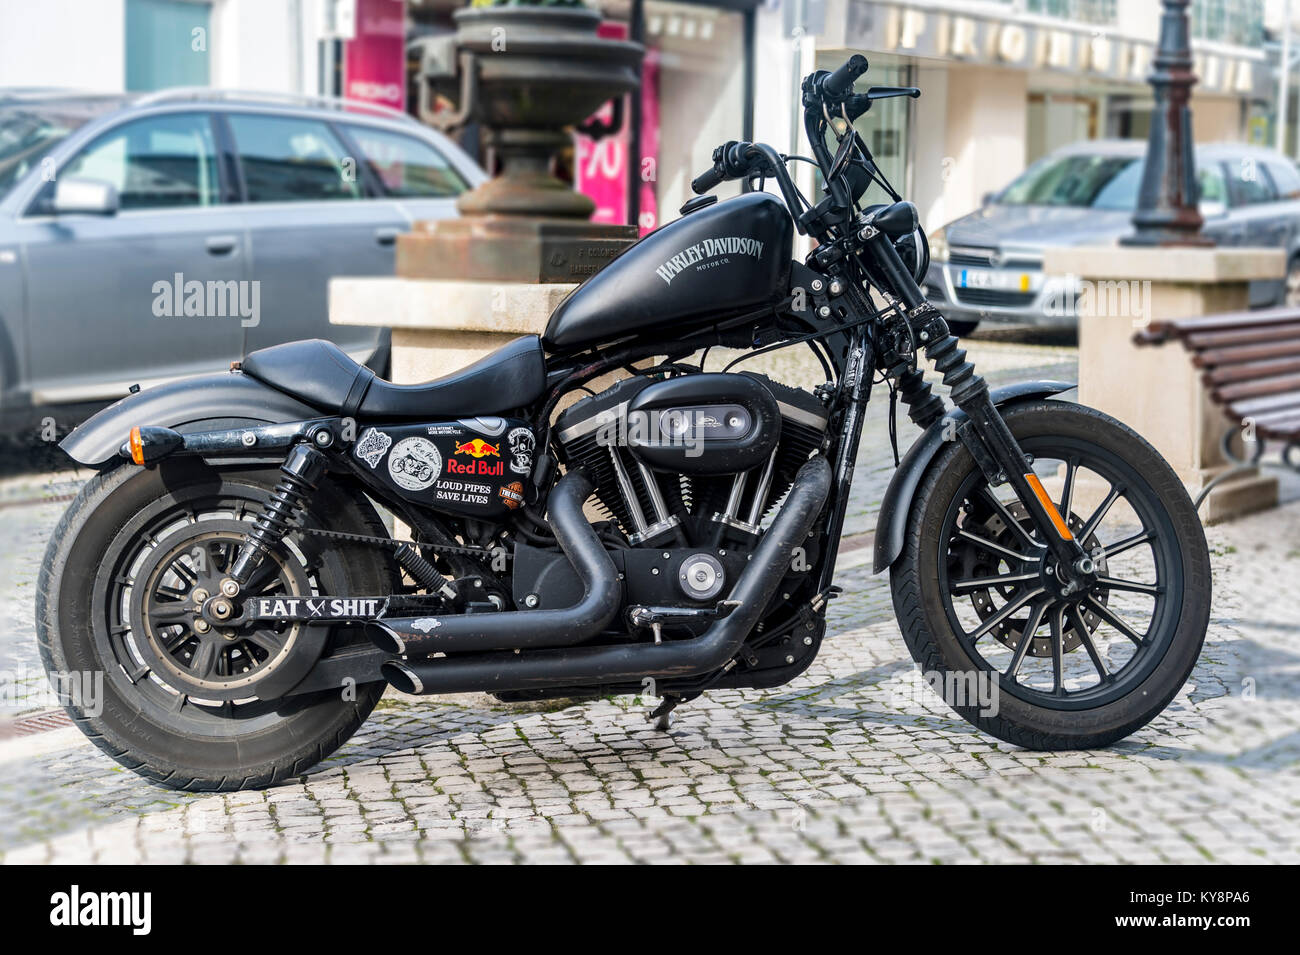 Harley Davidson Motorrad in mattem Schwarz auf einer gepflasterten Straße in Portugal geparkt. Stockfoto